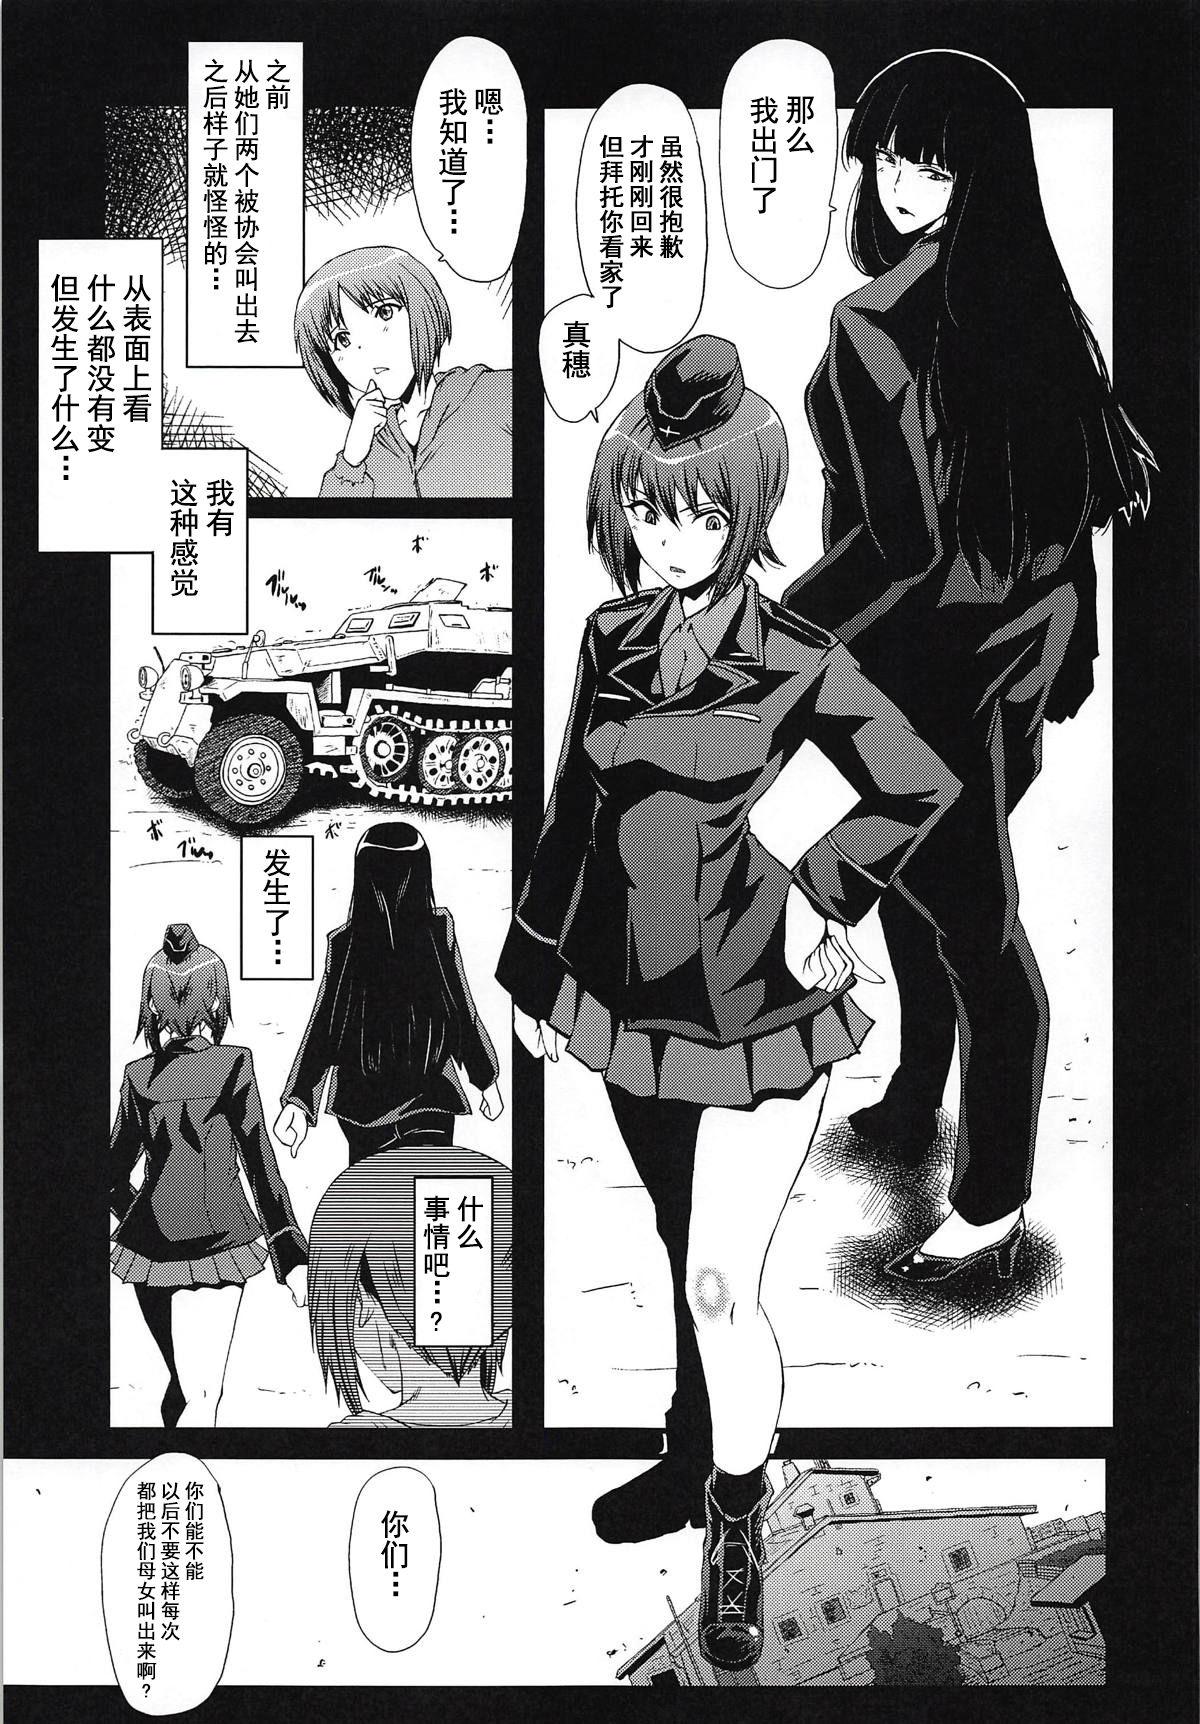 Classroom Urabambi Vol. 57 Taihai no Koutetsu Fujin - Girls und panzer Eating - Page 4